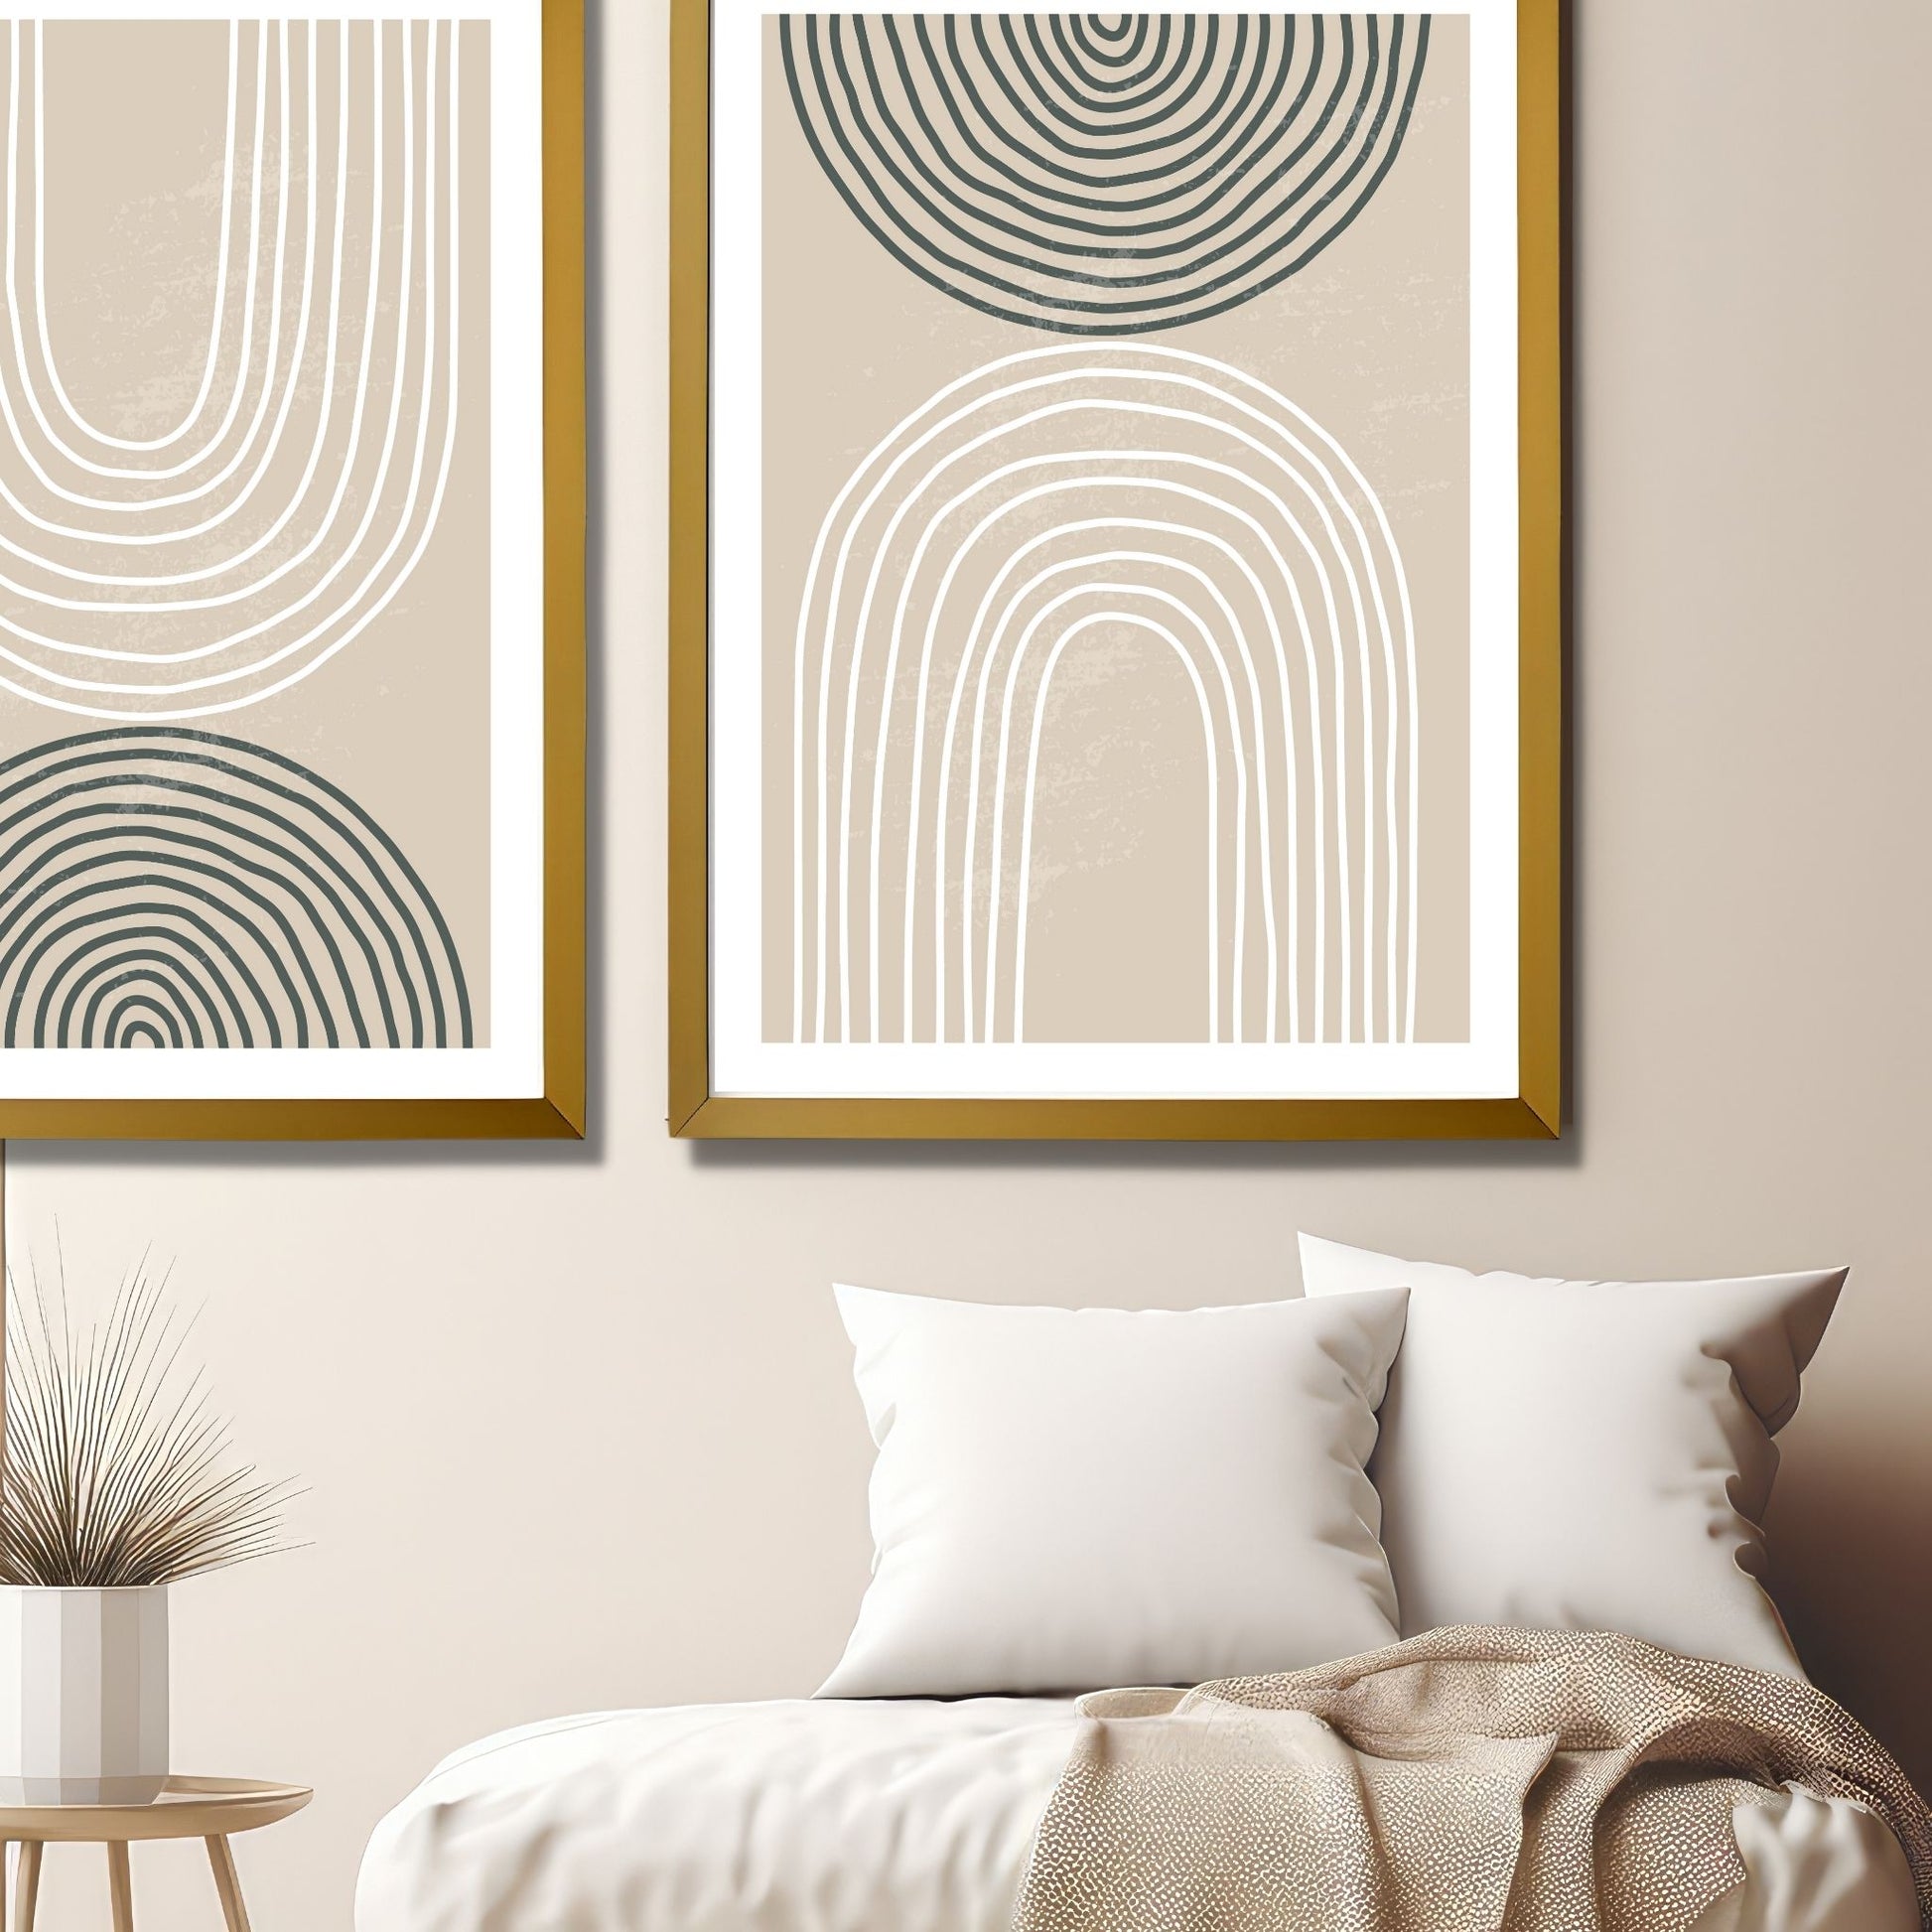 Abstrakt mønster av linjer i nyanser av beige, hvitt og sort . Plakatmotiv har en bred hvit kant som fremhever og gir dybde til motivet. Illustrasjonen viser to bilder i eikeramme hengt ved siden av hverandre, og det ene henger opp-ned.